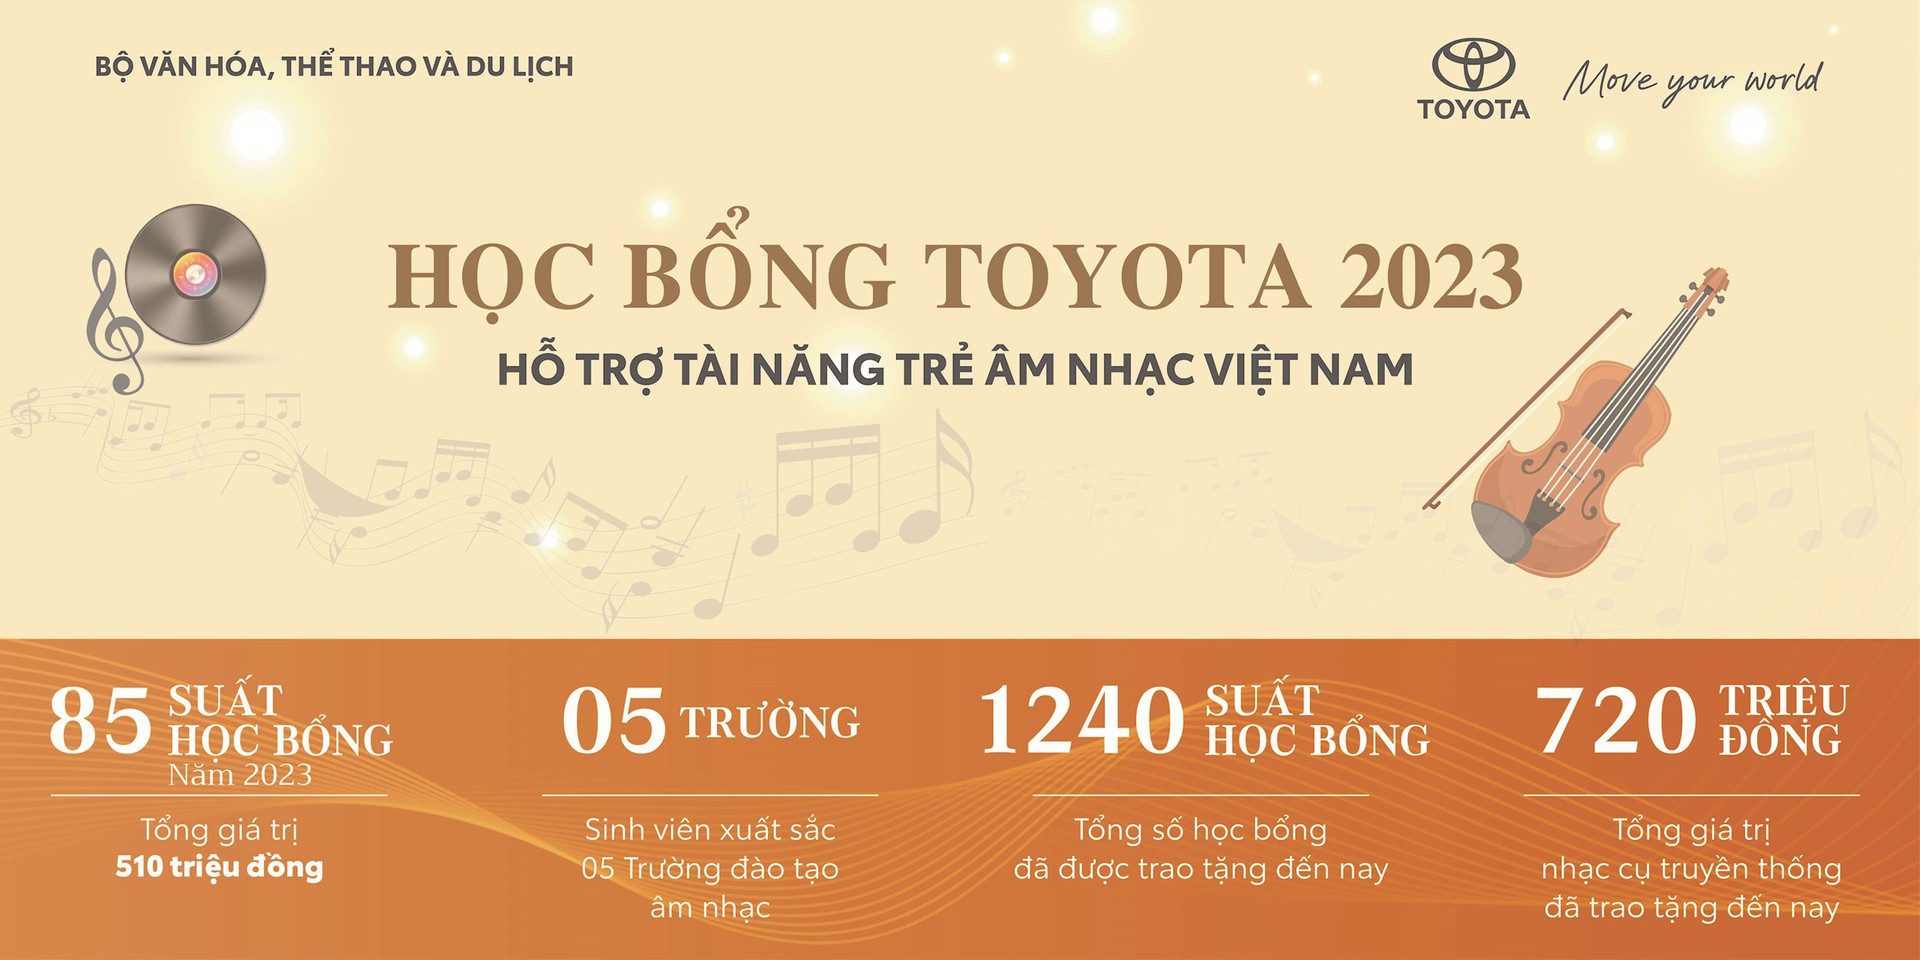 hoc-bong-toyota-ho-tro-tai-nang-tre-am-nhac-viet-nam-2023.jpg